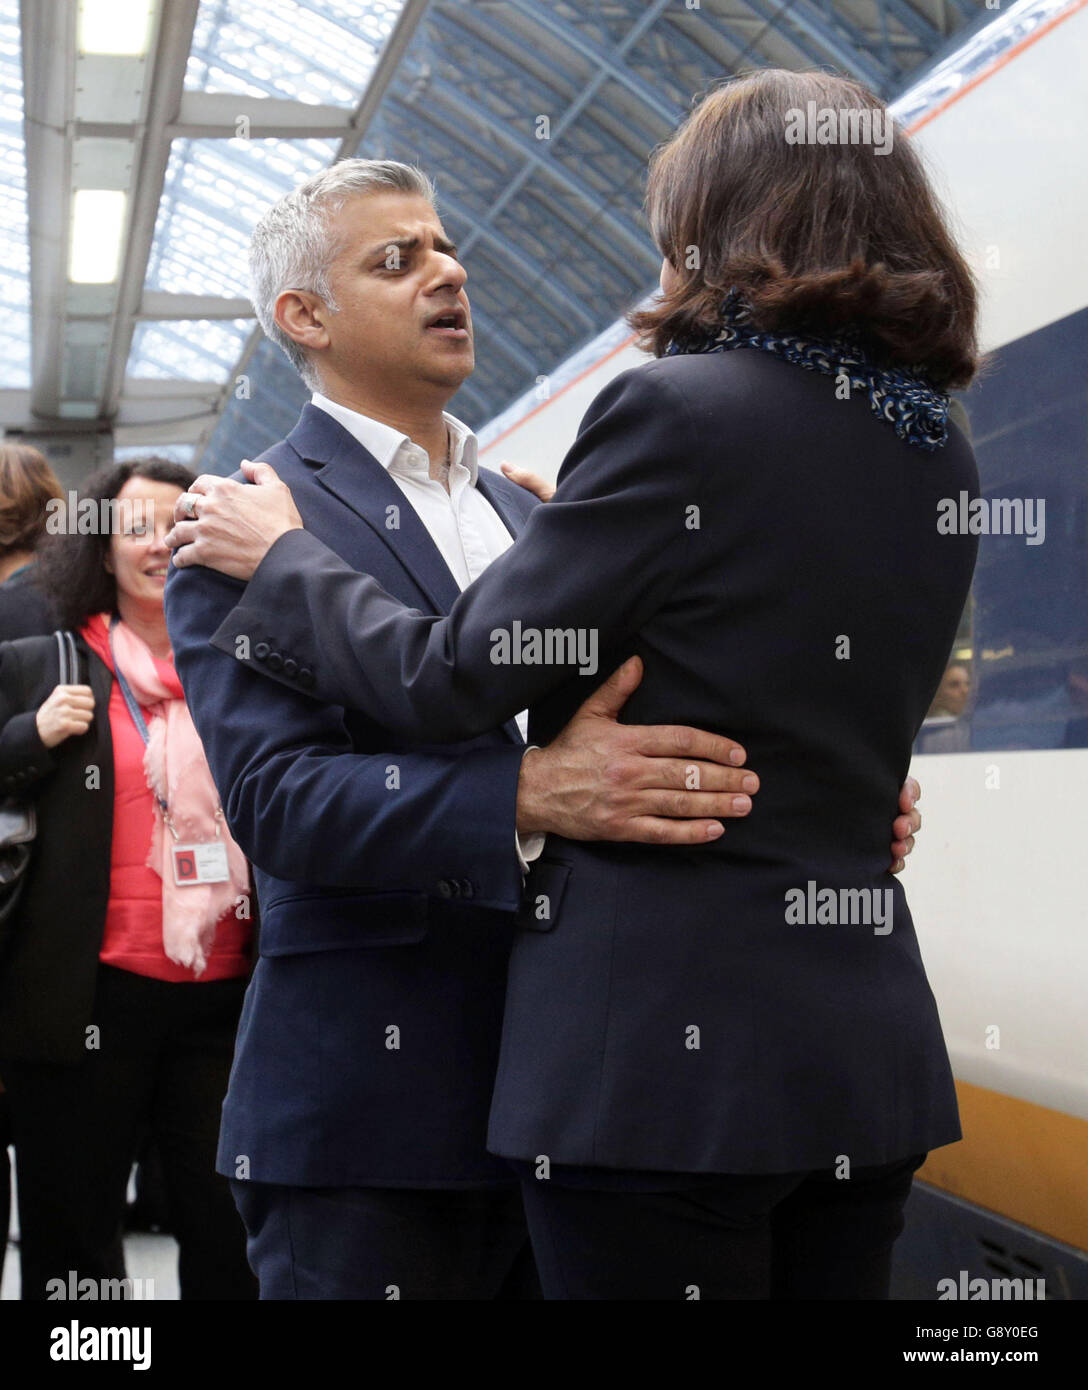 Le maire nouvellement élu de Londres Sadiq Khan salue le maire de Paris Anne Hidalgo à la gare de St Pancras à Londres après son arrivée en Eurostar pour le féliciter. Banque D'Images